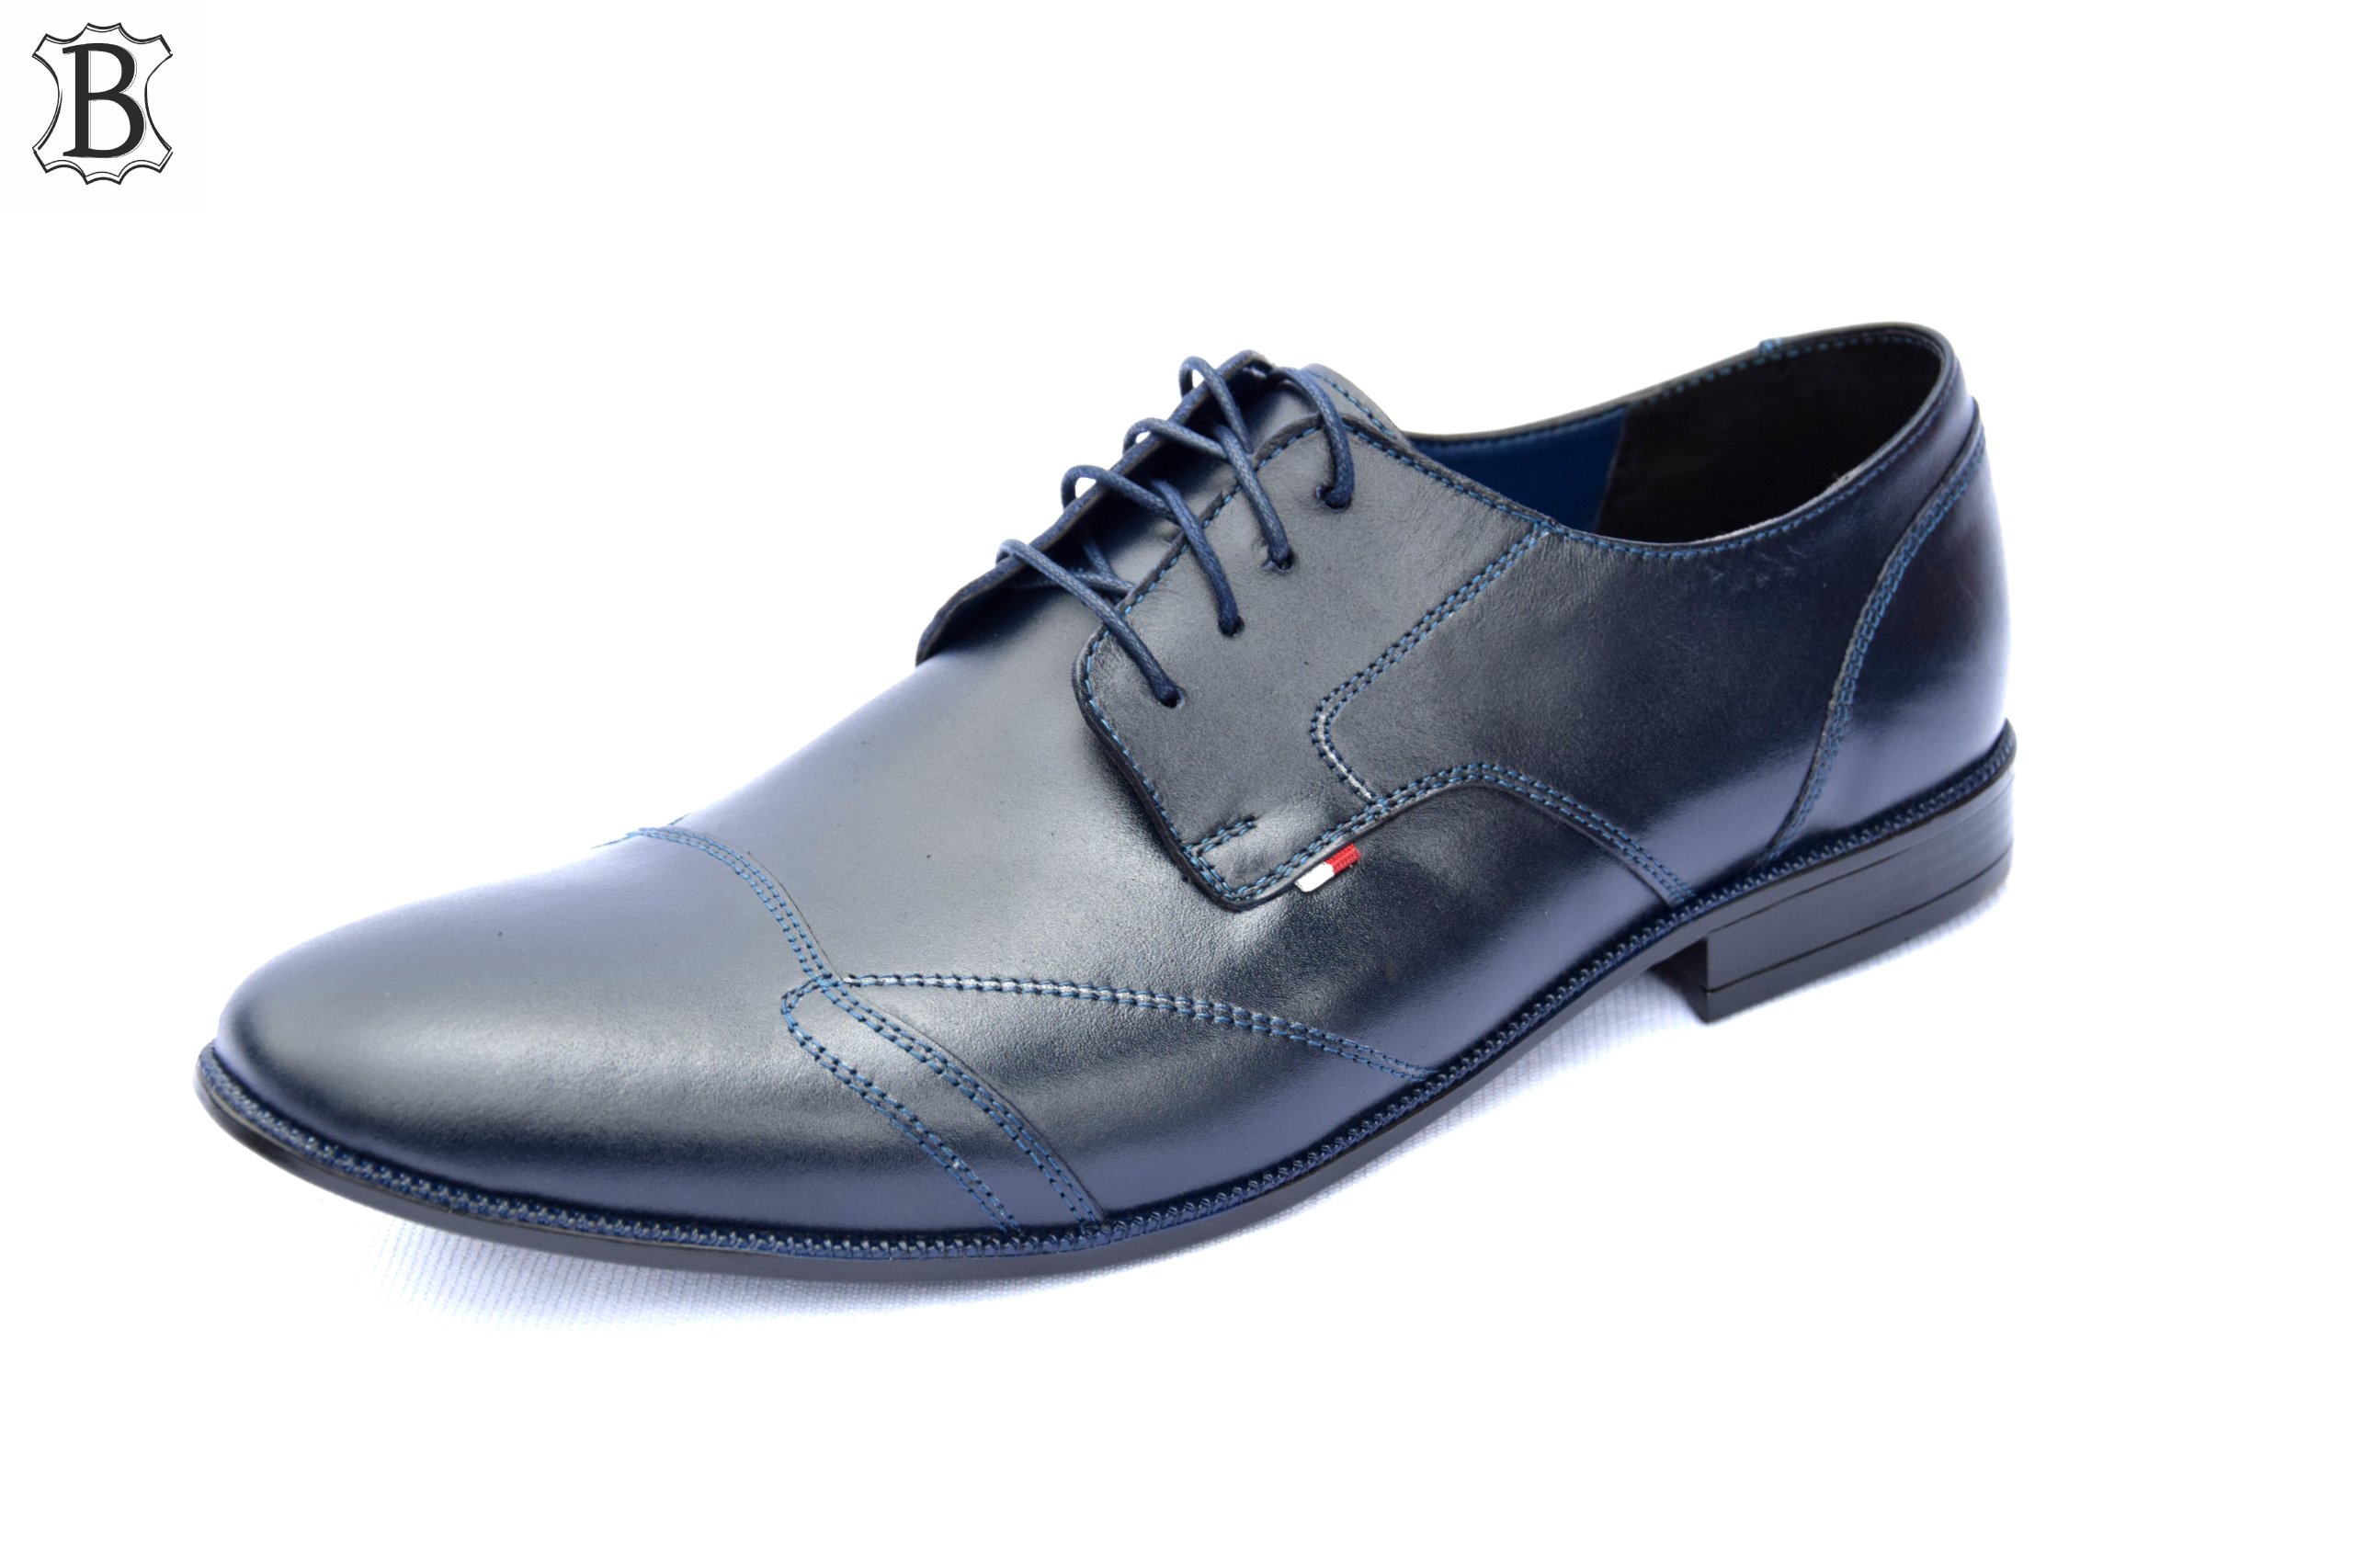 Обувь кожаная формальная польская модель 2018 270 г пол мужской продукт